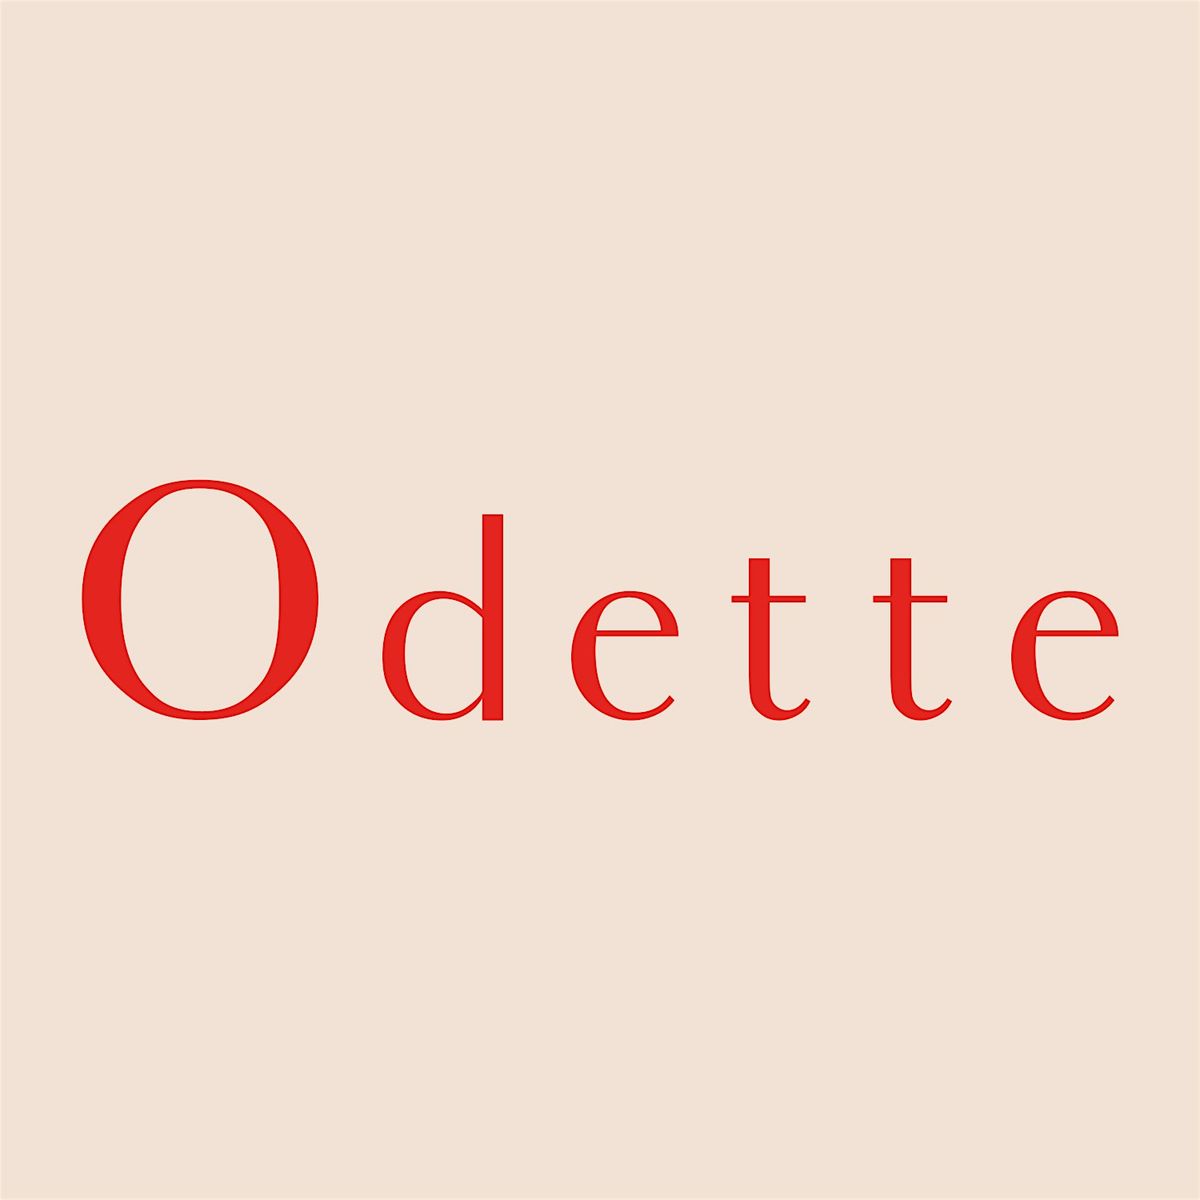 Odette - Instagram Workshop with Lou at Spark Social